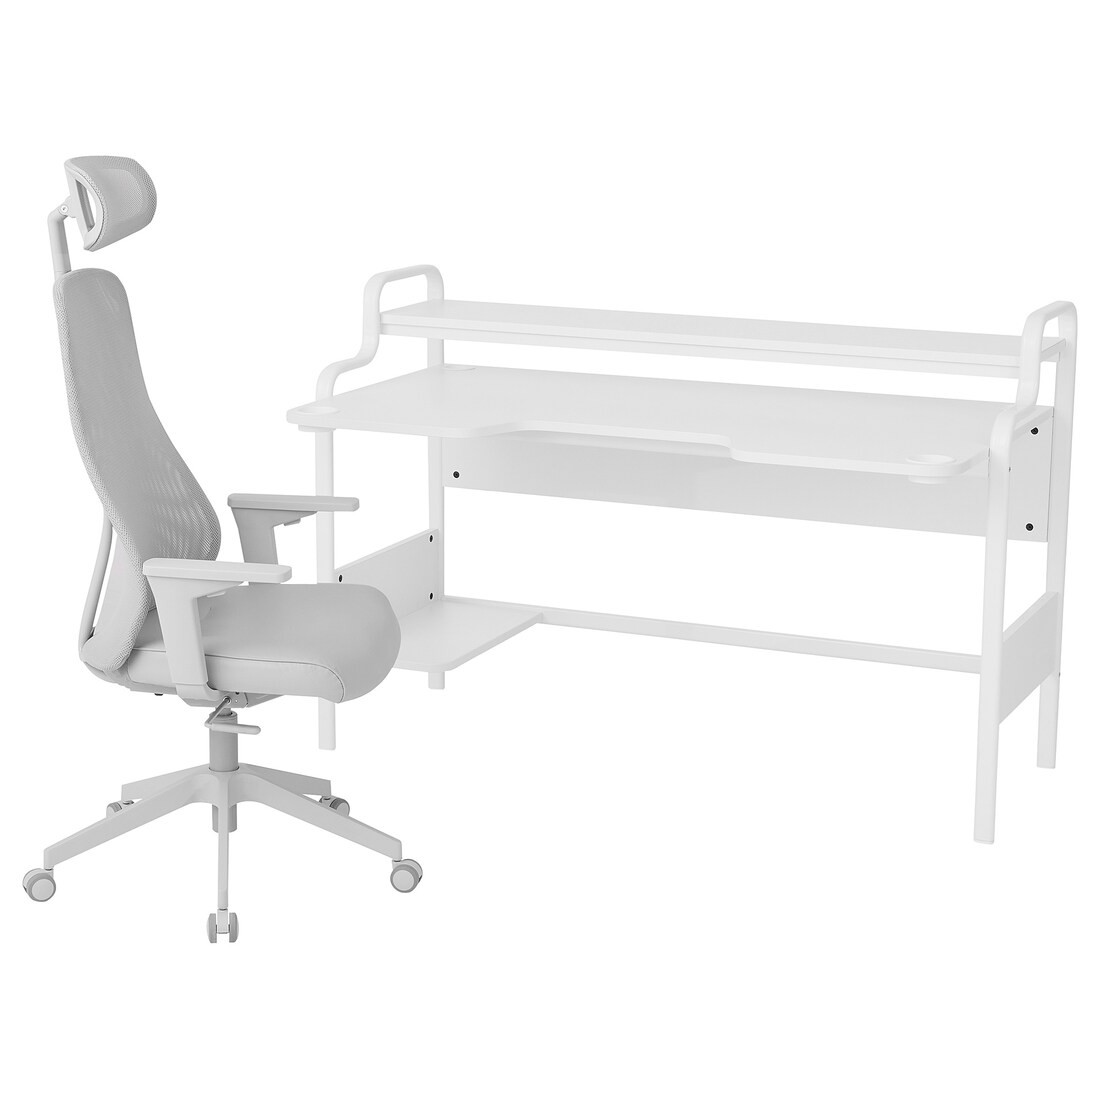 FREDDE / MATCHSPEL Геймерський стіл та крісло, білий / світло-сірий, 74 см